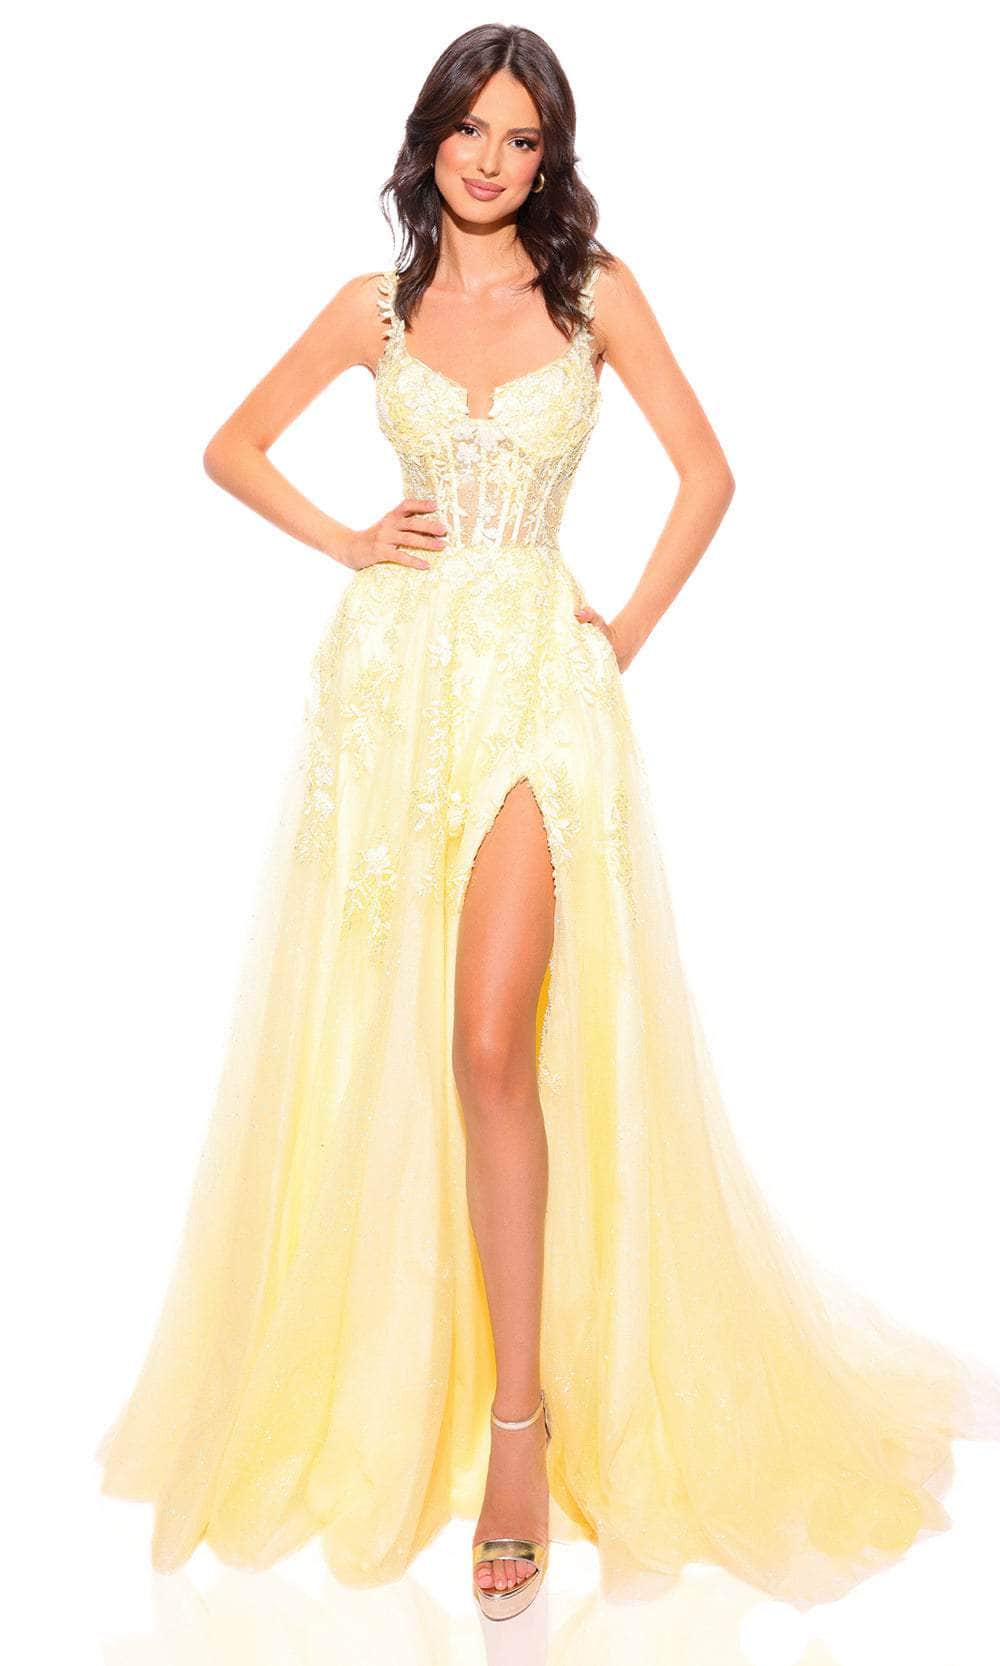 Amarra 88849 - Lace Ornate Corset Prom Dress 6 / Yellow